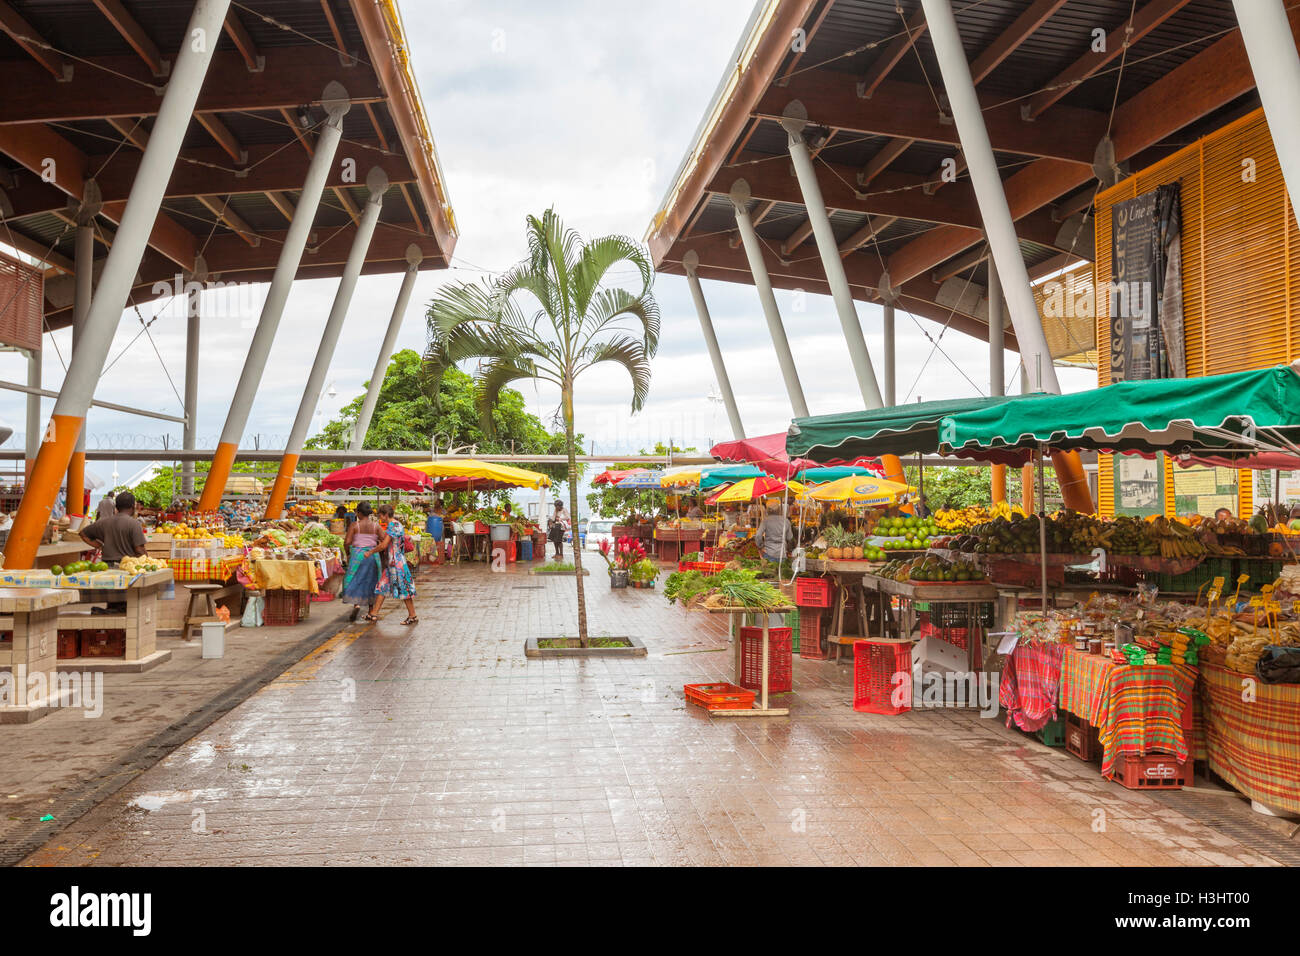 Le marché se situe sur le marché couvert de la capitale de la Guadeloupe Basse-Terre Banque D'Images